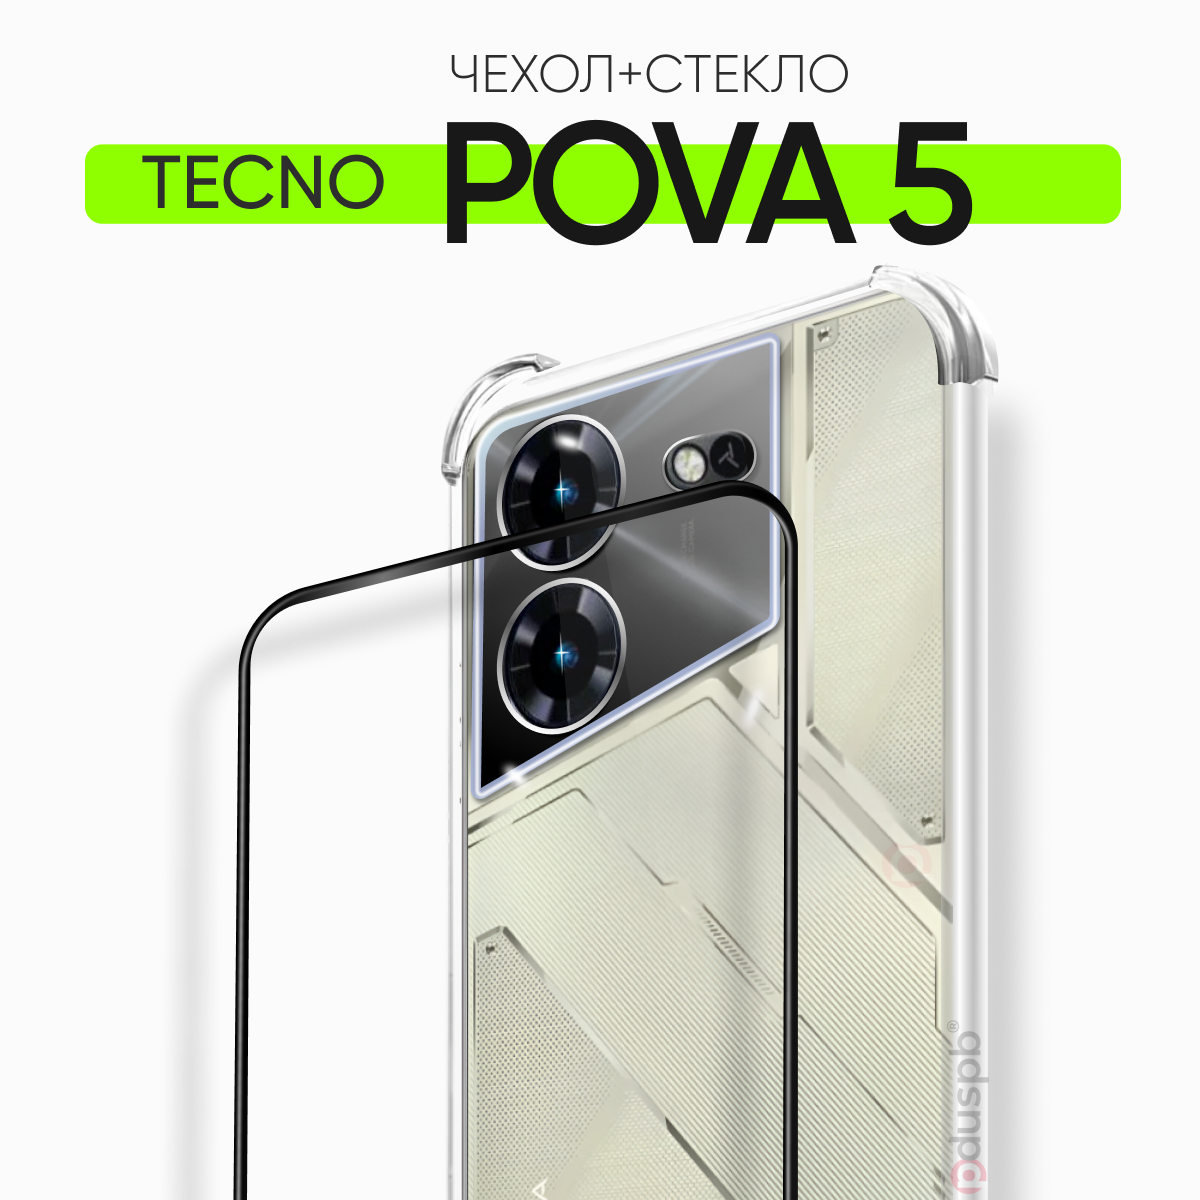 Комплект 2 в 1: Чехол №03 + стекло для Tecno Pova 5 / противоударный силиконовый прозрачный клип-кейс с защитой камеры и углов на Текно Техно Пова 5